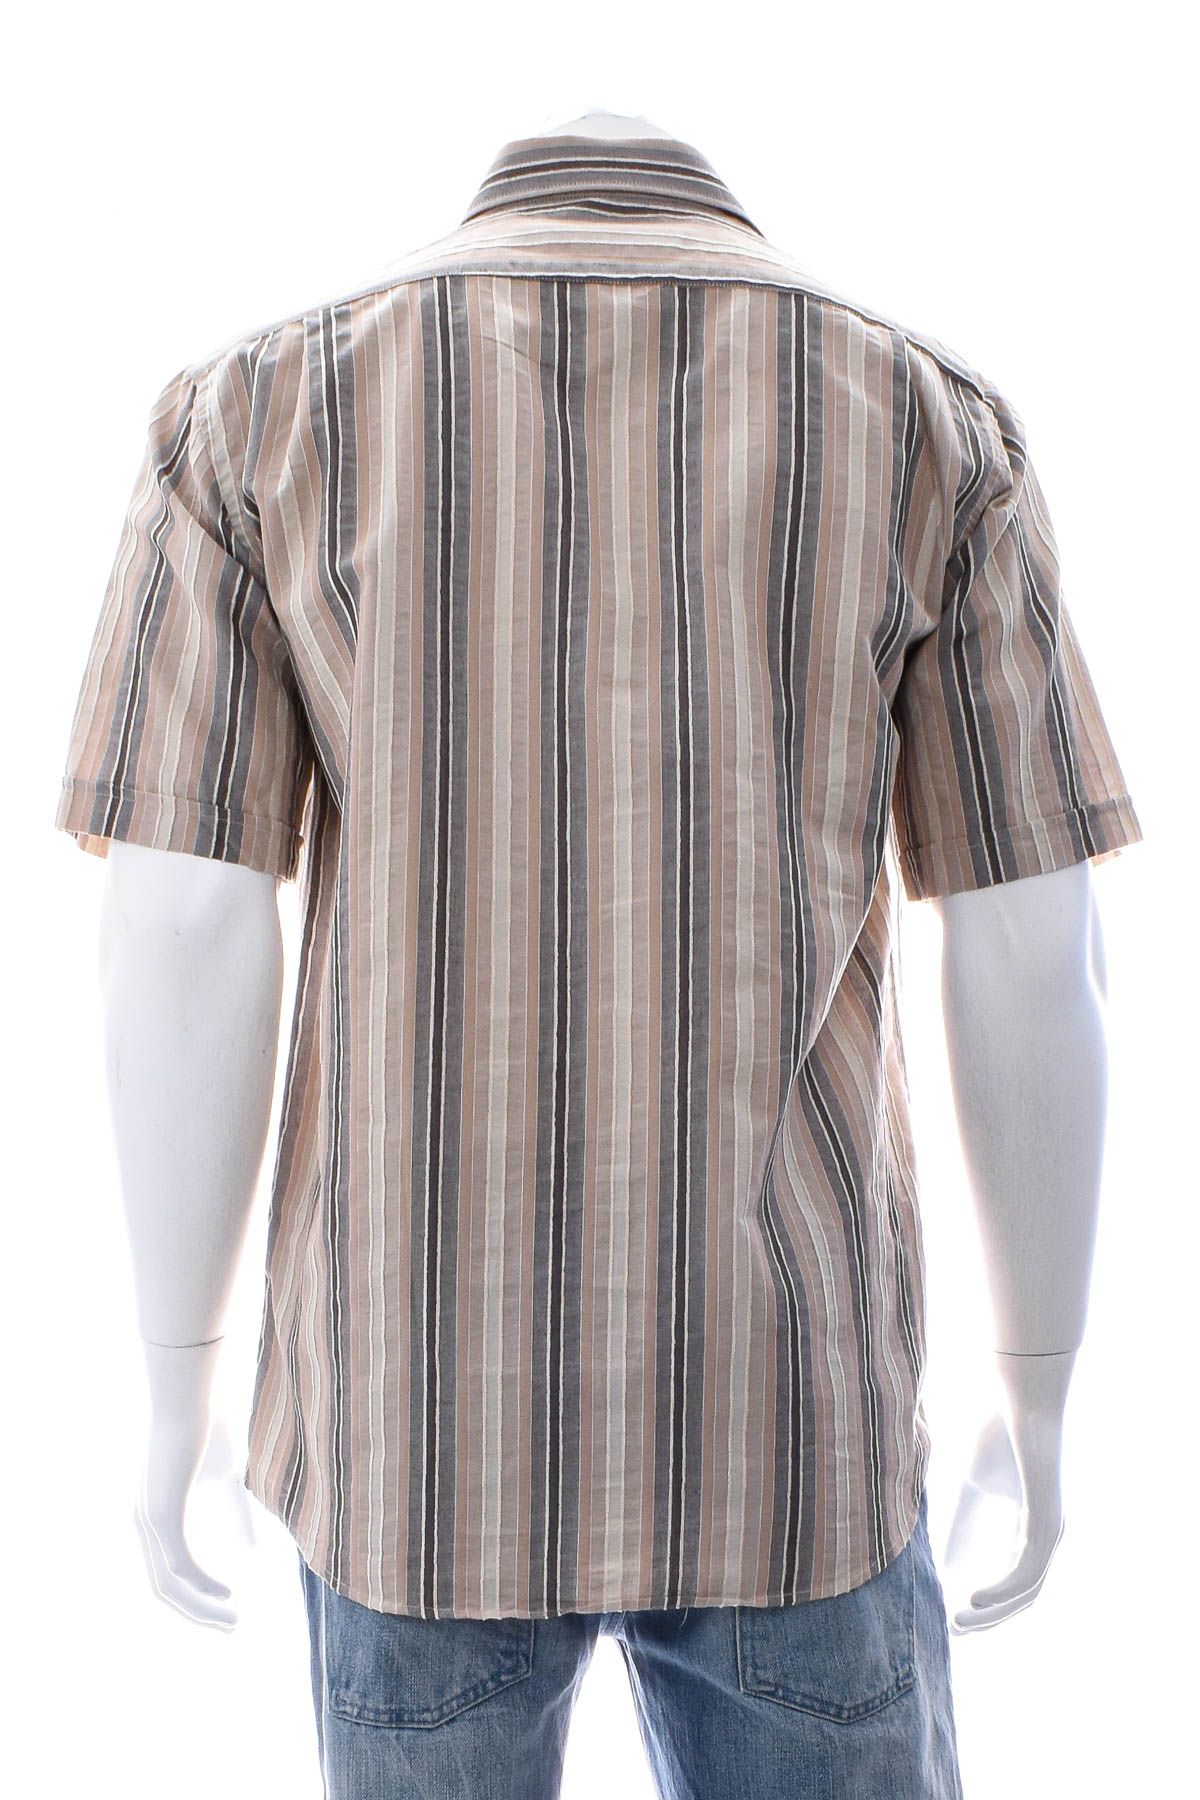 Ανδρικό πουκάμισο - Dubbin & Hollinshead - 1